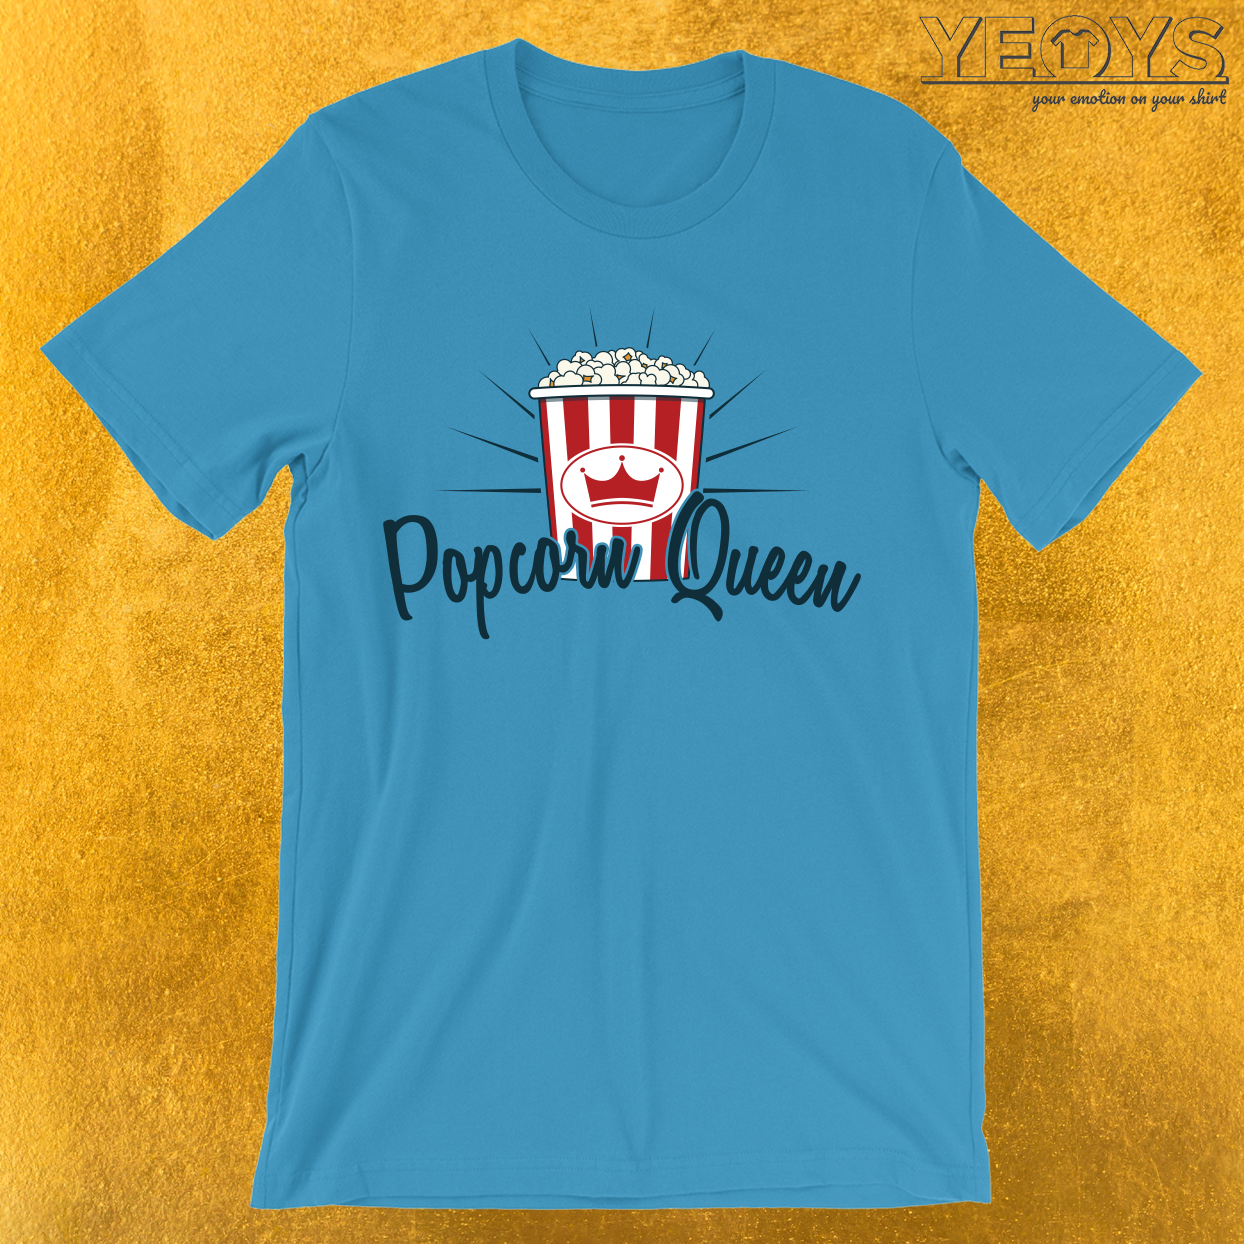 Popcorn Queen T-Shirt